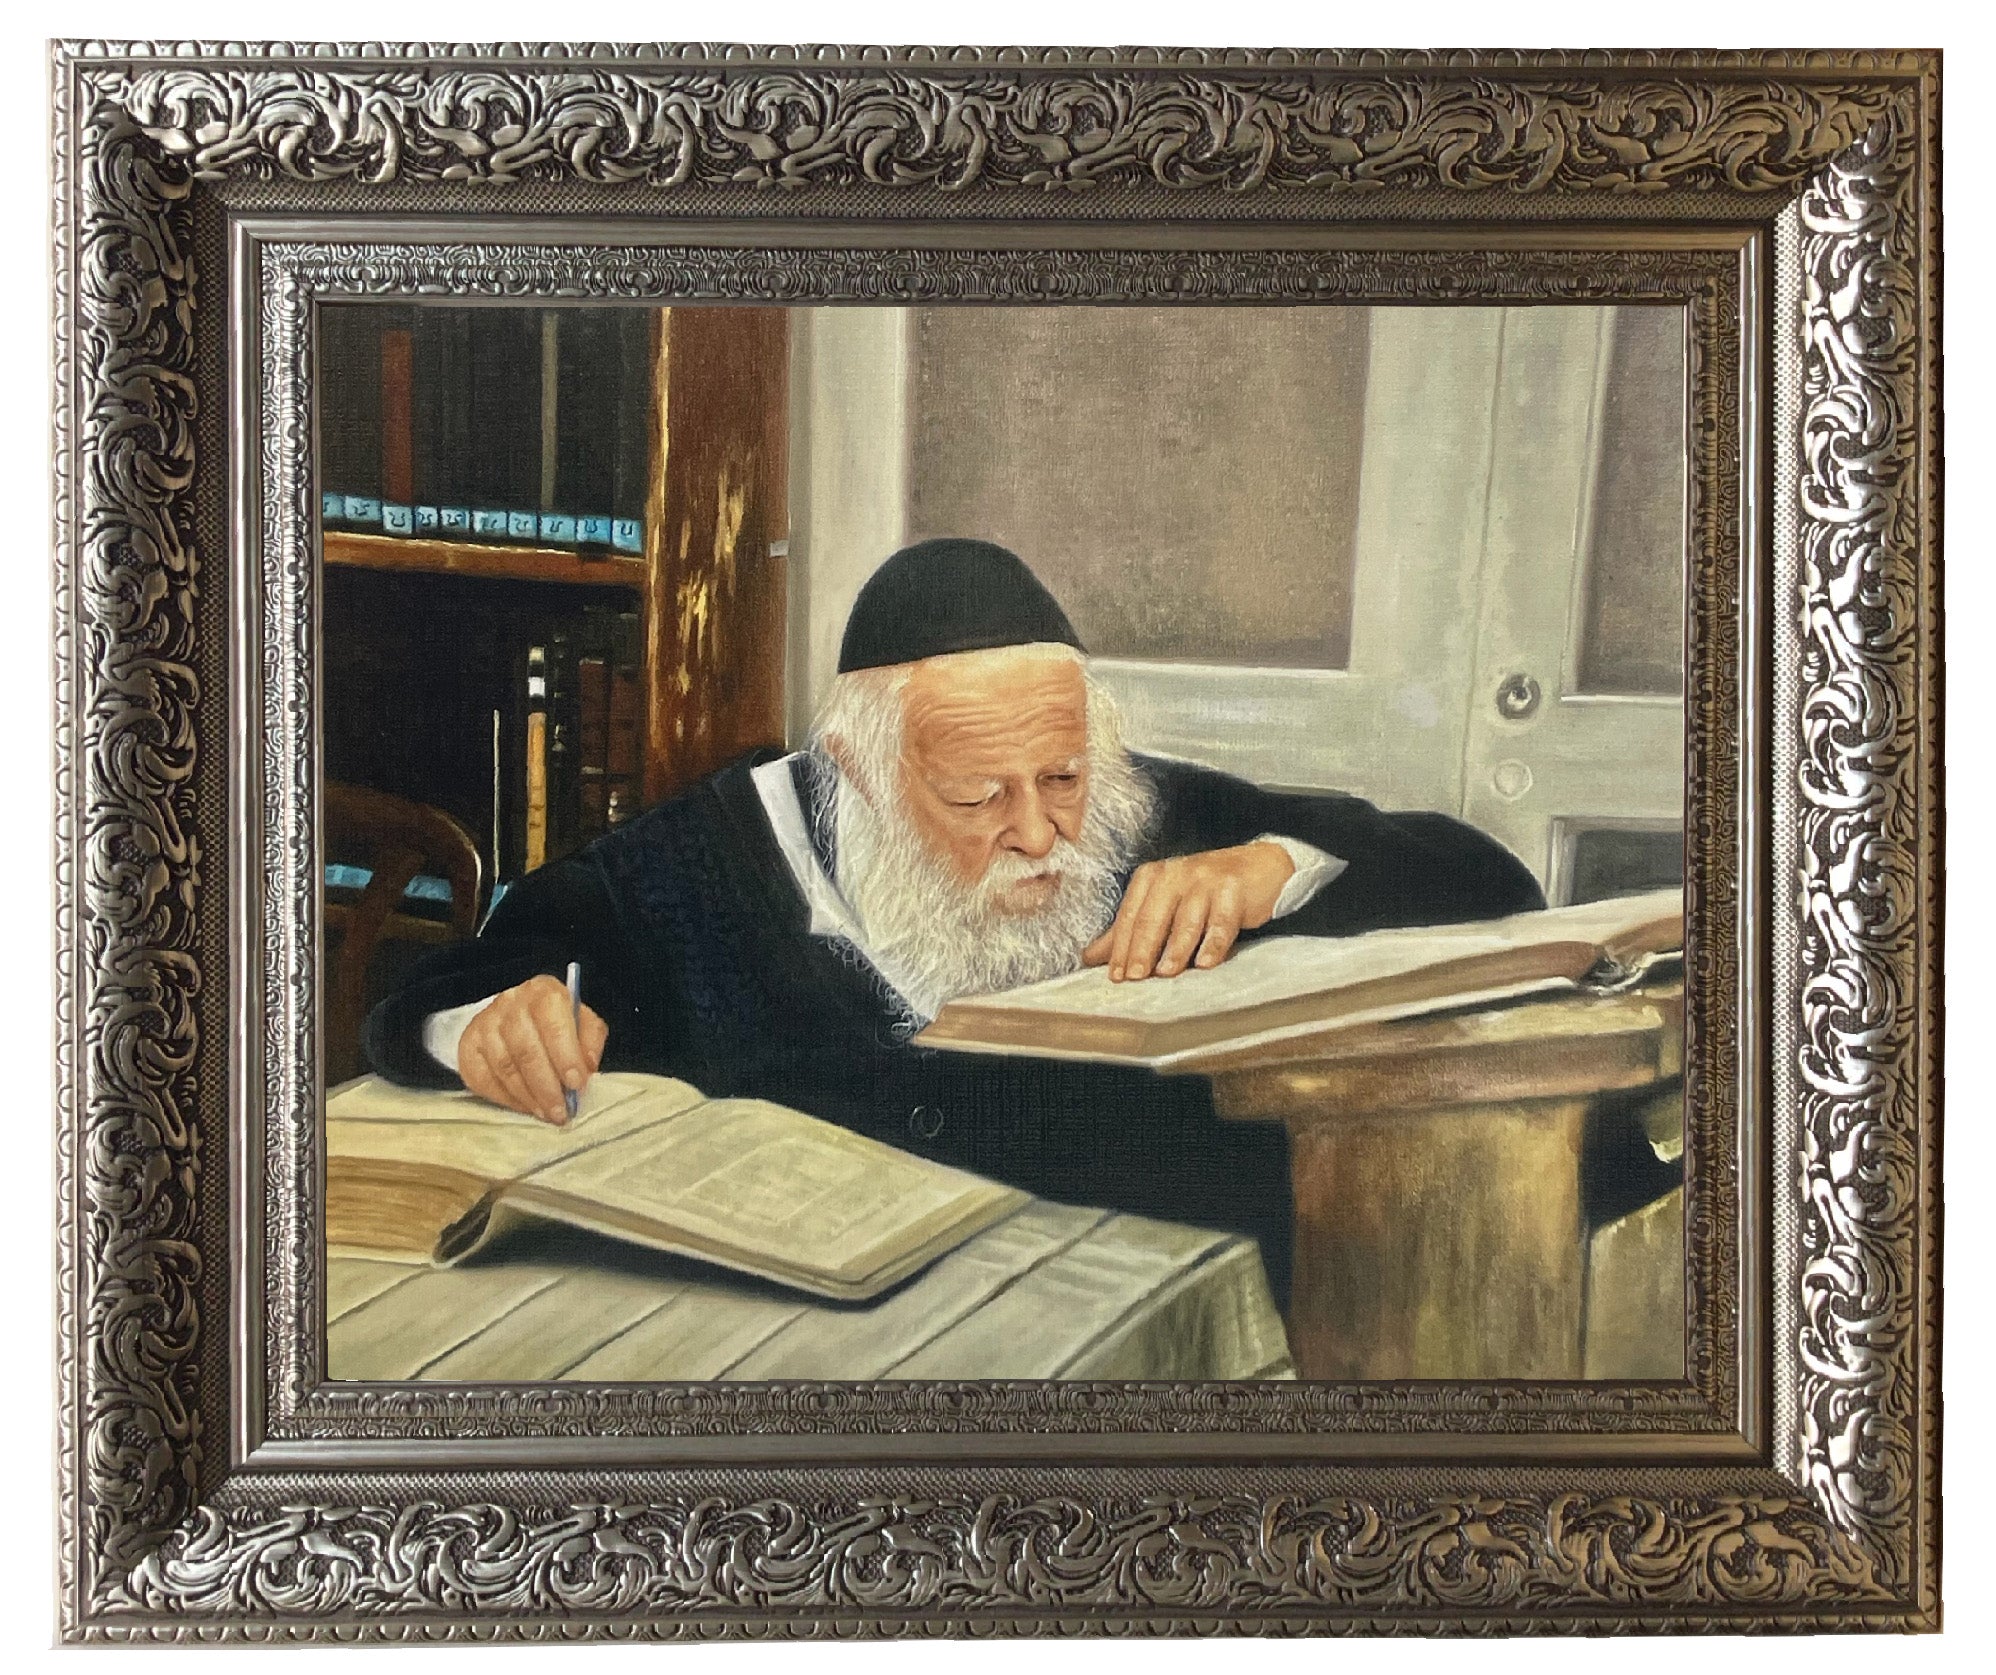 Reb Chaim Kanievsky